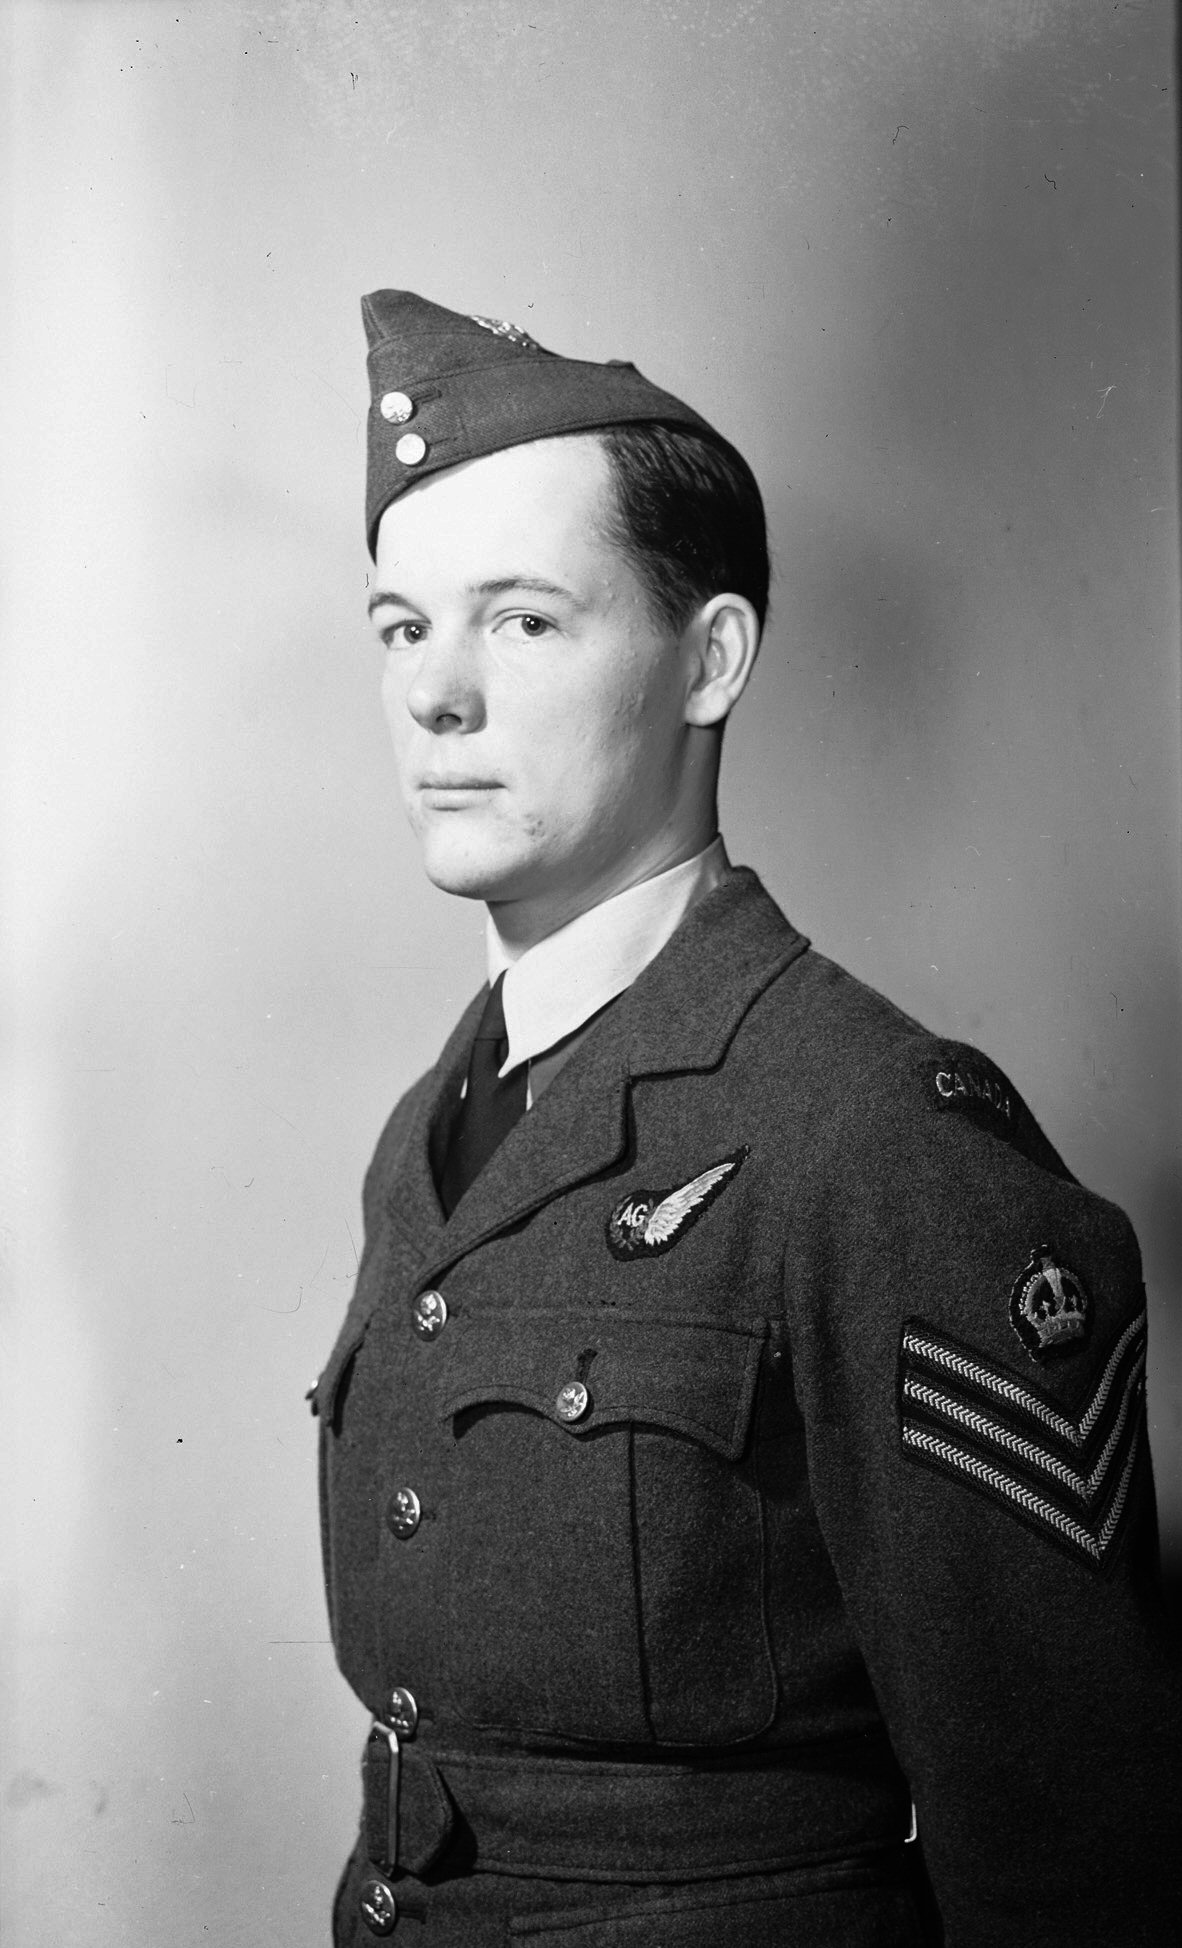 F/Sgt. William R. Orndorff